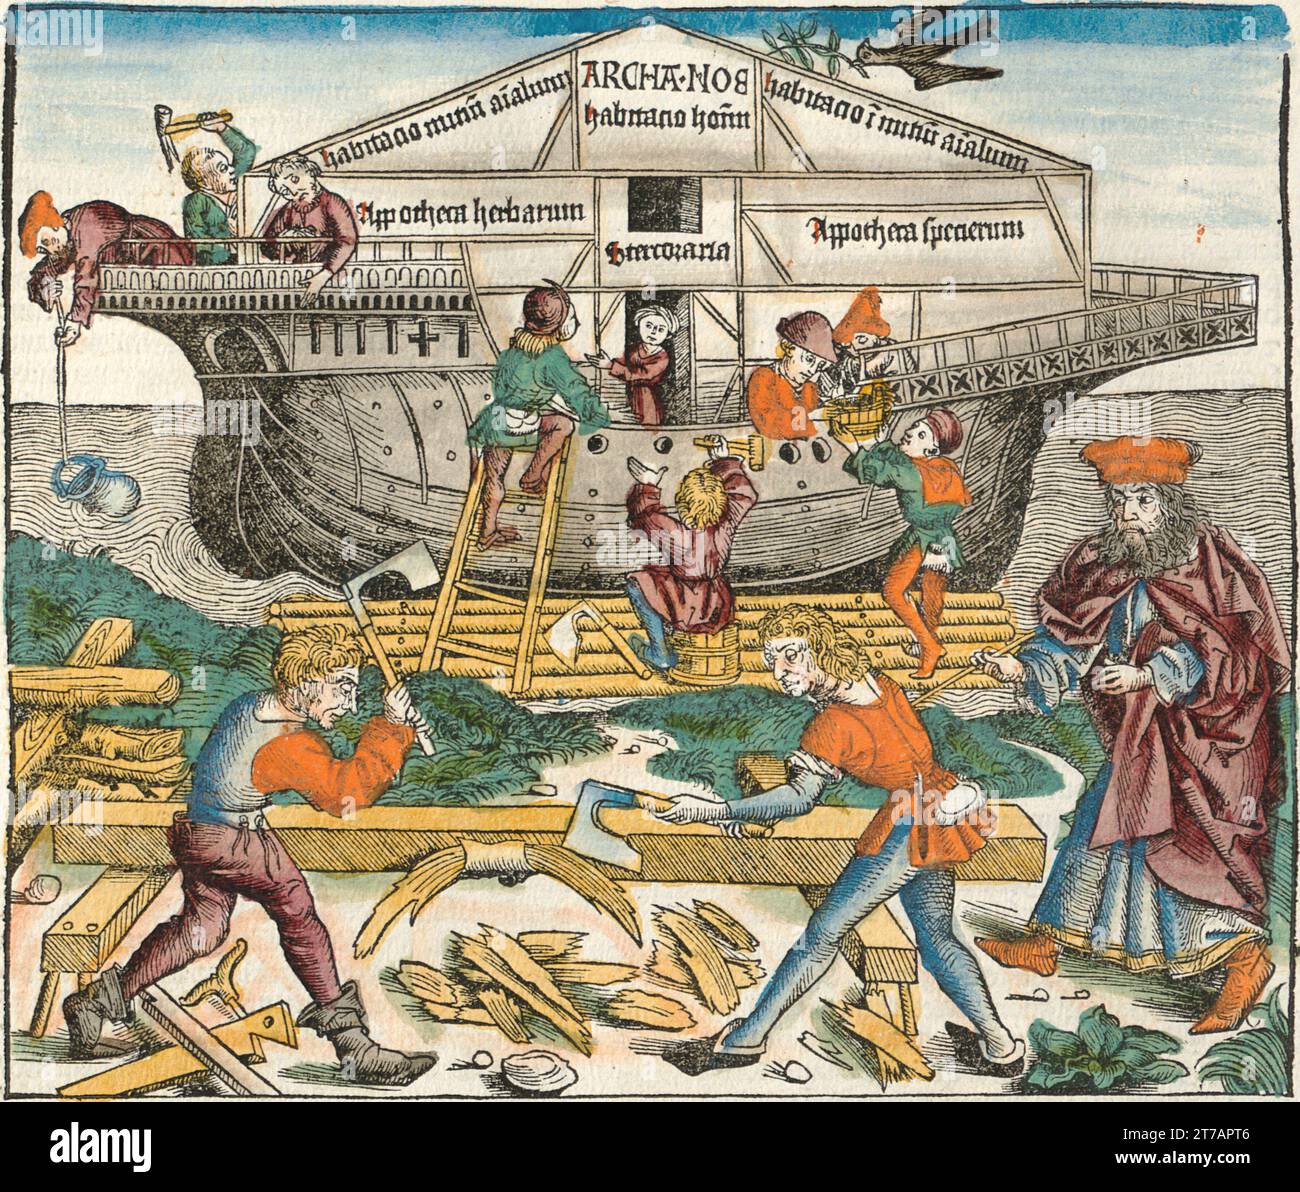 Représentation de l'arche de Noé en cours de construction - Illustration de la chronique de Nuremberg, 1493. Illustré par Wilhelm Pleydenwurff et Michael Wolgemut Banque D'Images